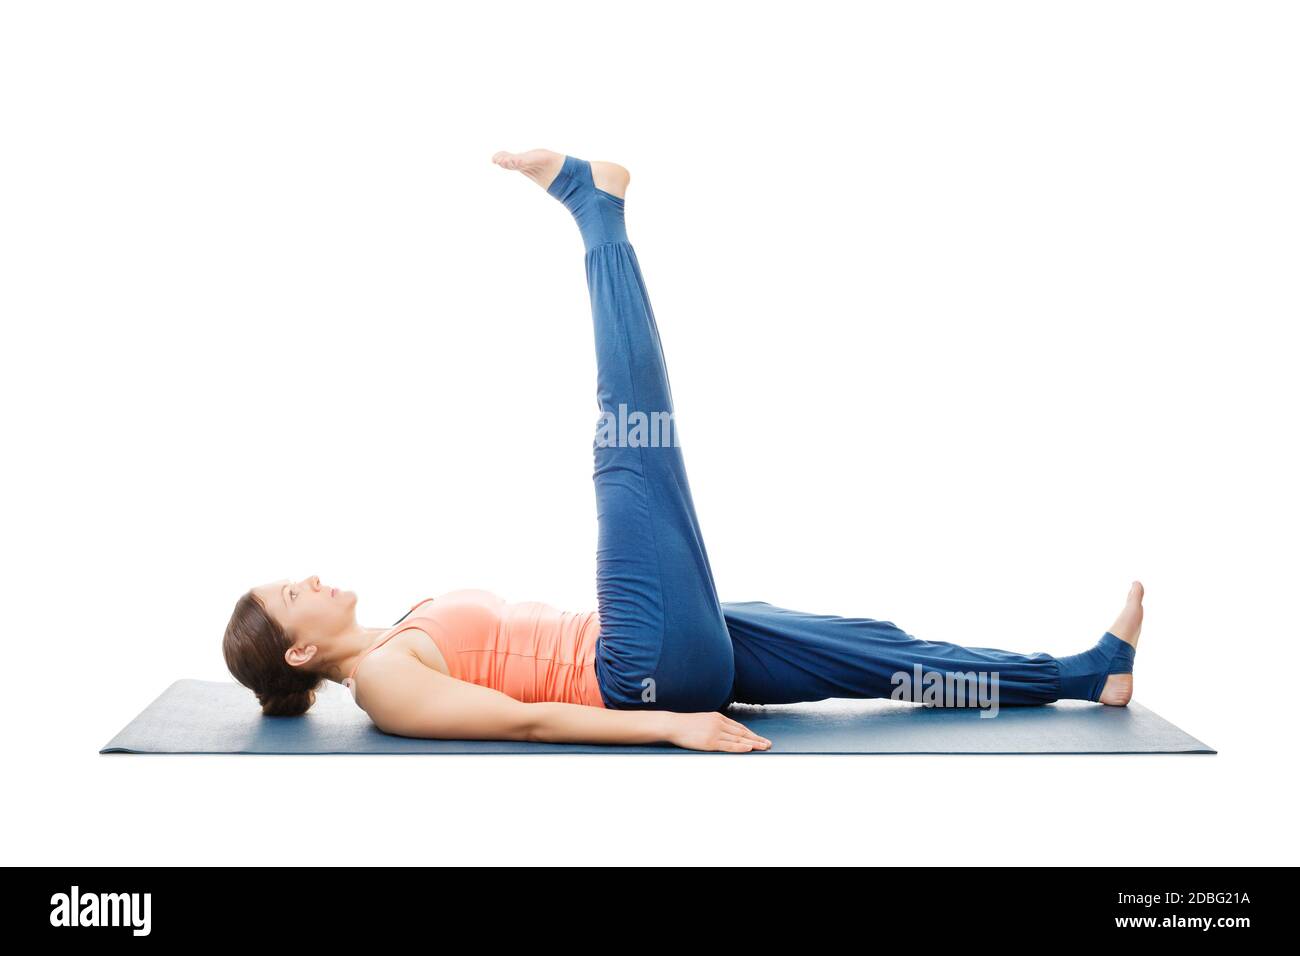 Frau macht Yoga Asana Uttanpadasana - liegend gerades Bein Heben Pose Haltung isoliert auf weißem Hintergrund Stockfoto